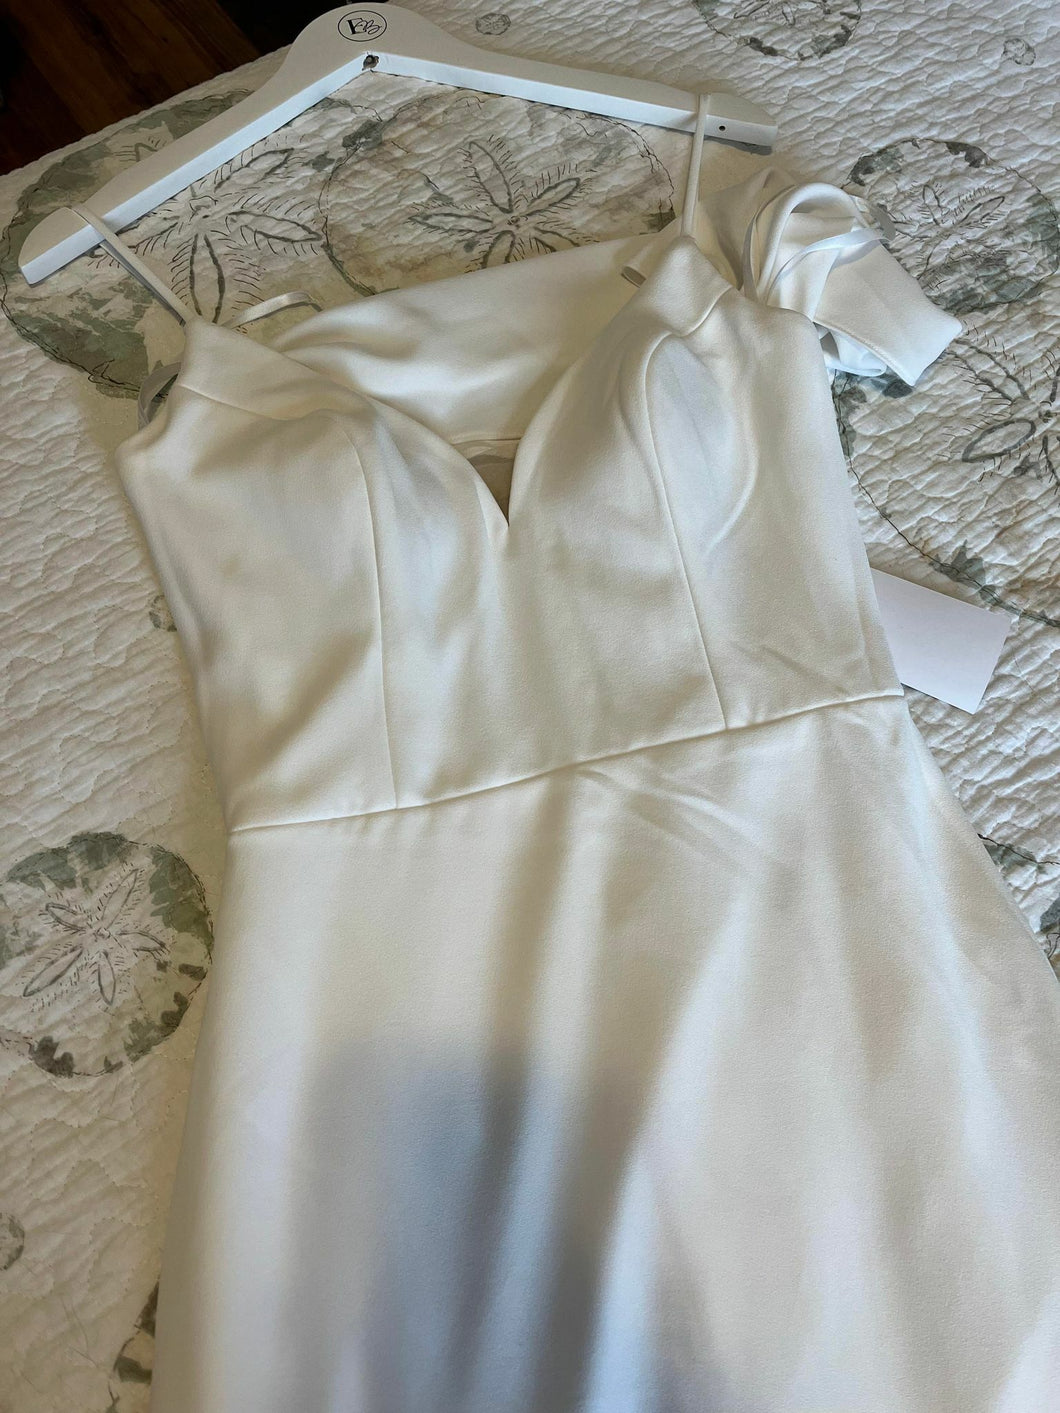 Sincerity '44322' wedding dress size-04 NEW